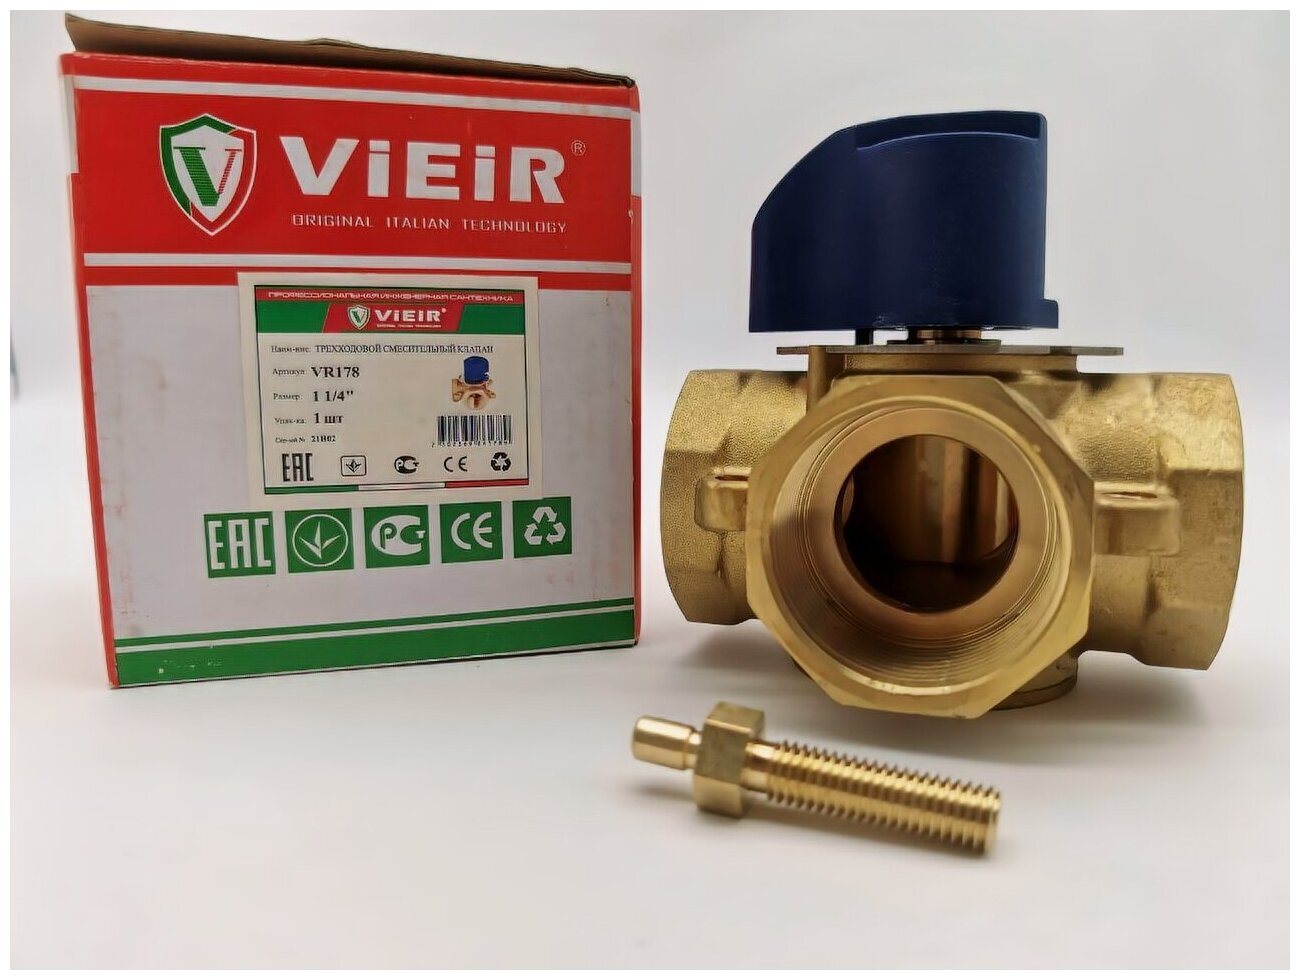 Трехходовойесительный клапан ViEiR VR178 муфтовый (ВР) Ду 32 (1 1/4") Kvs 169